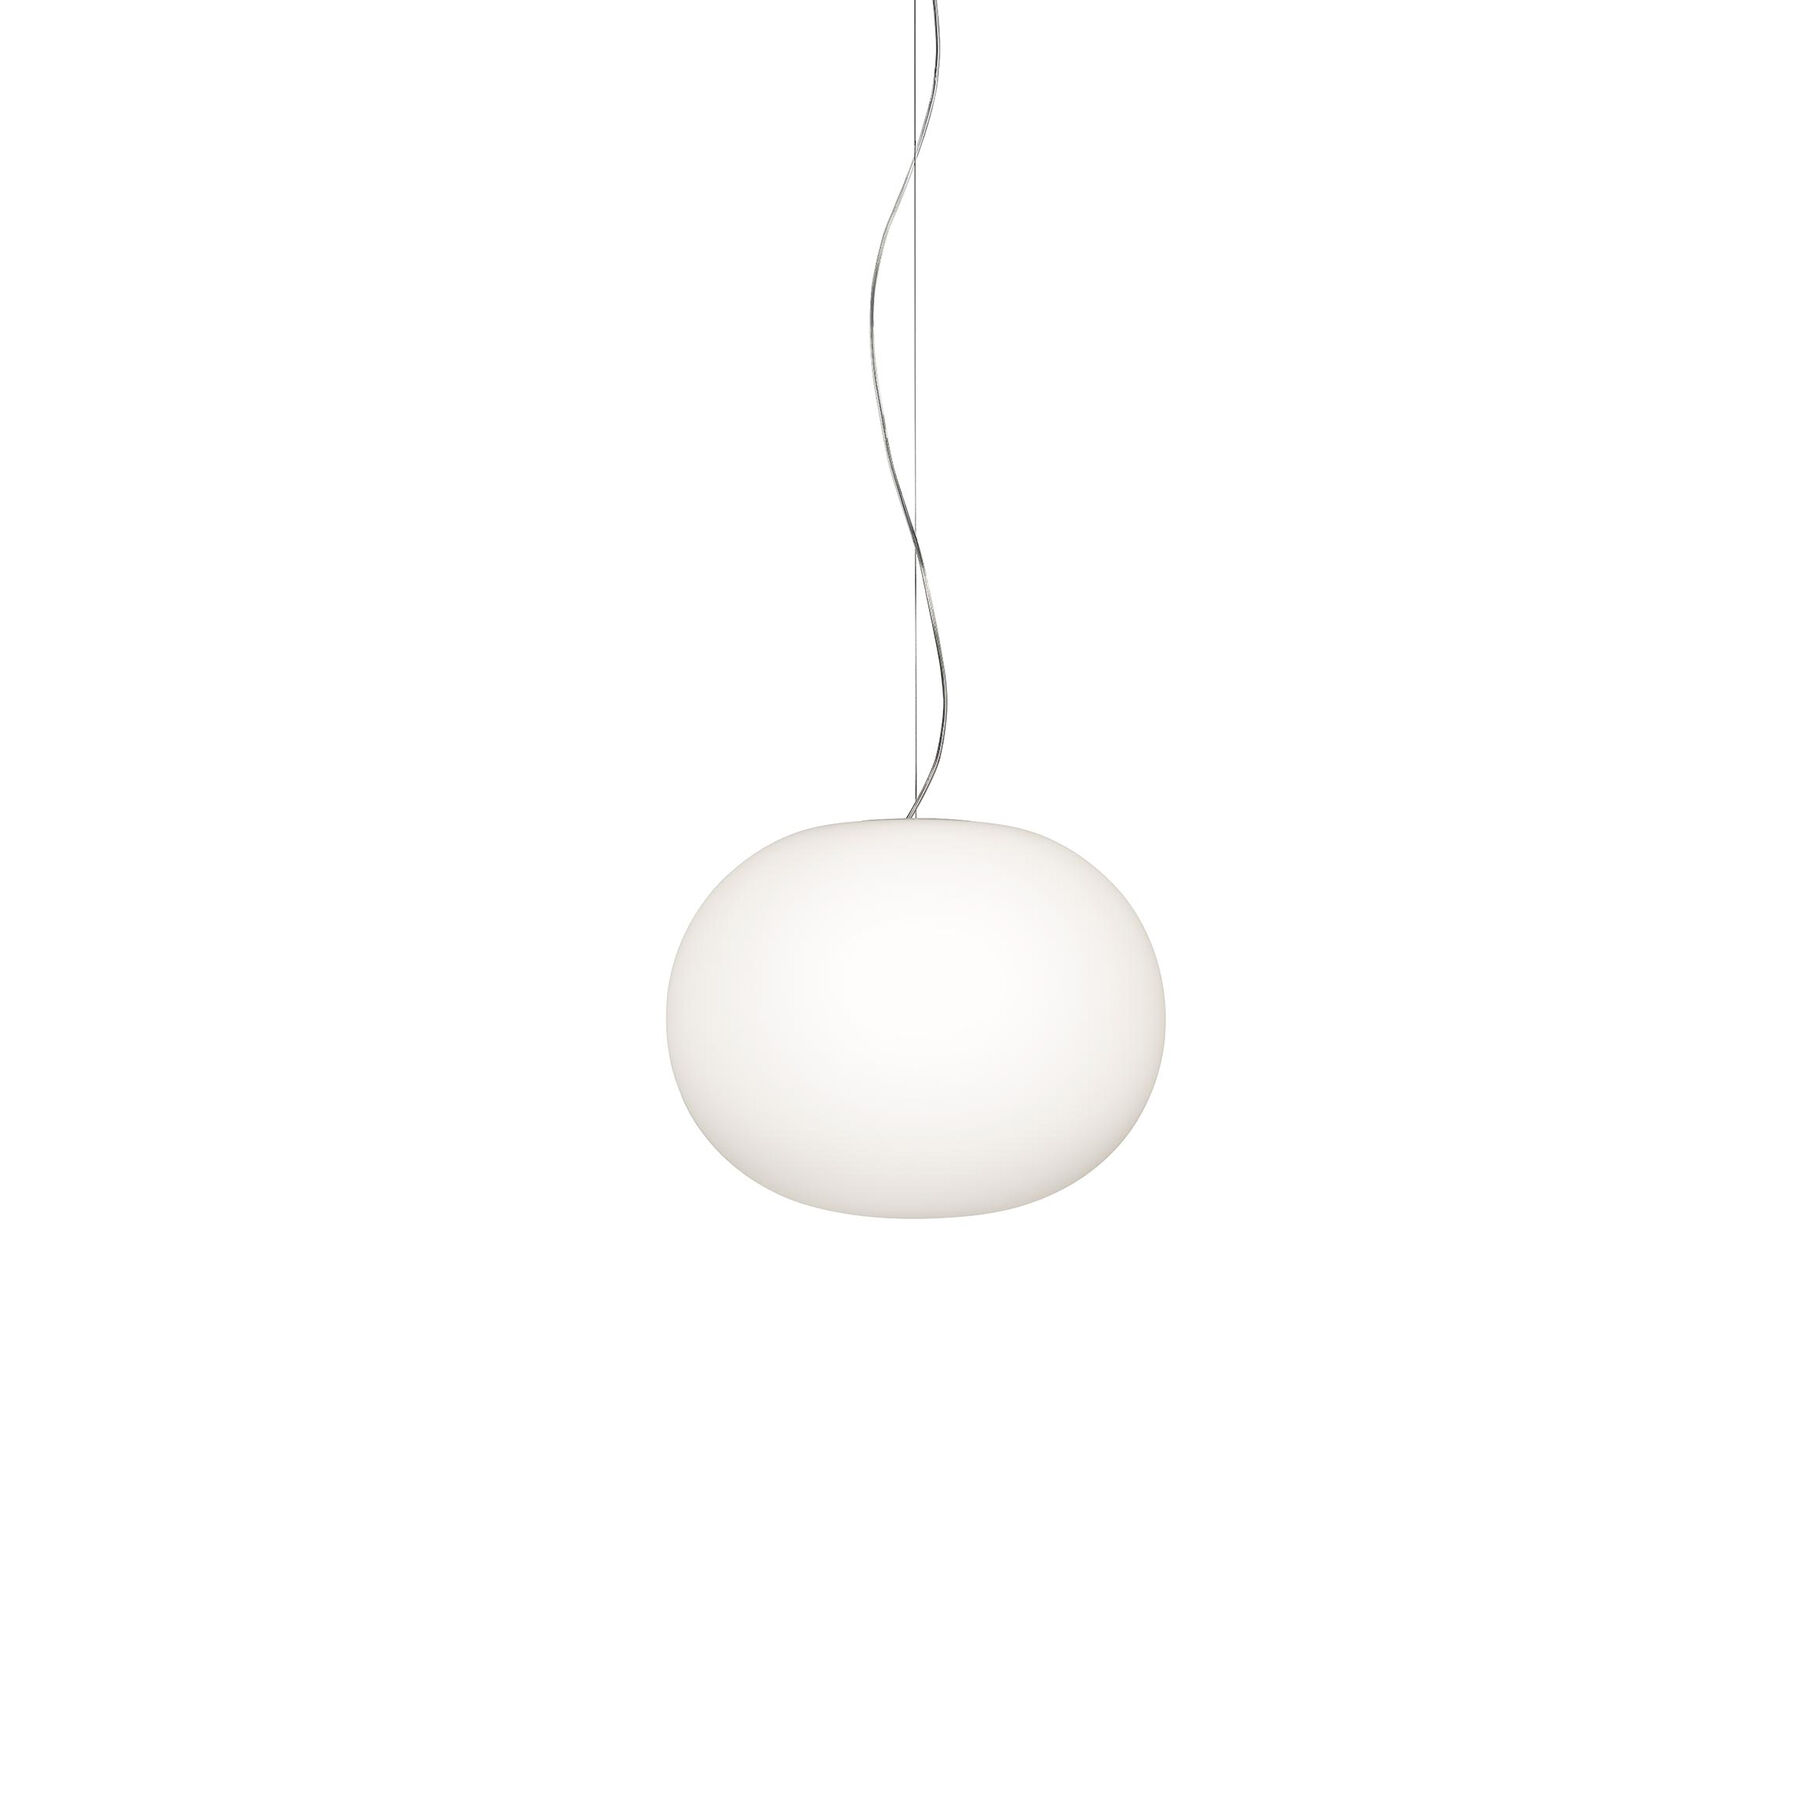 Купить Подвесной светильник Glo-Ball Suspension 2 в интернет-магазине roooms.ru